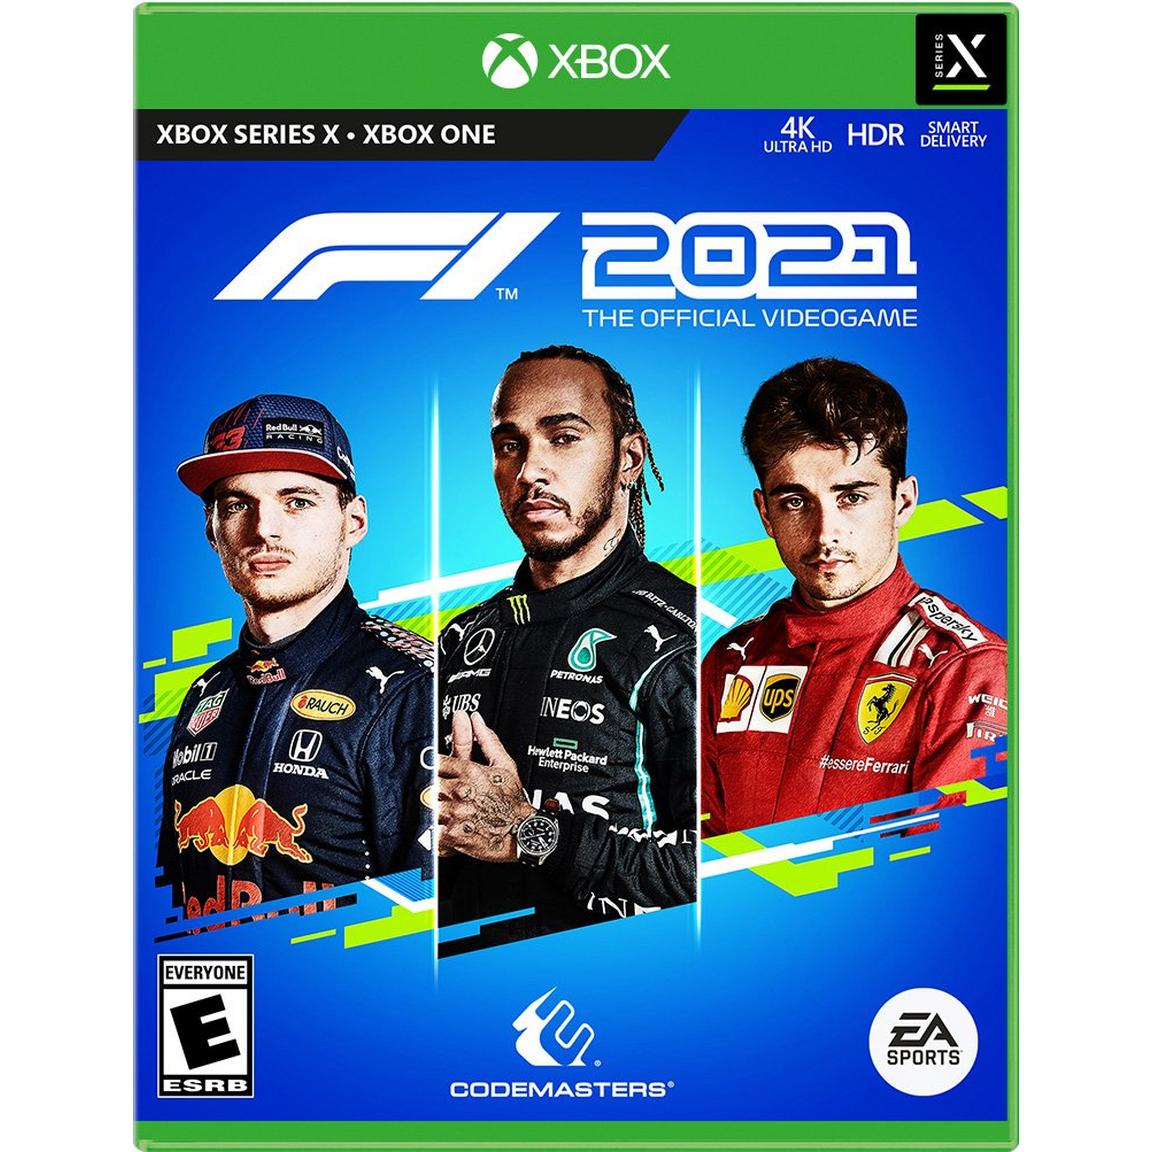 F1 2021 - (NEW) (Xbox Series X)